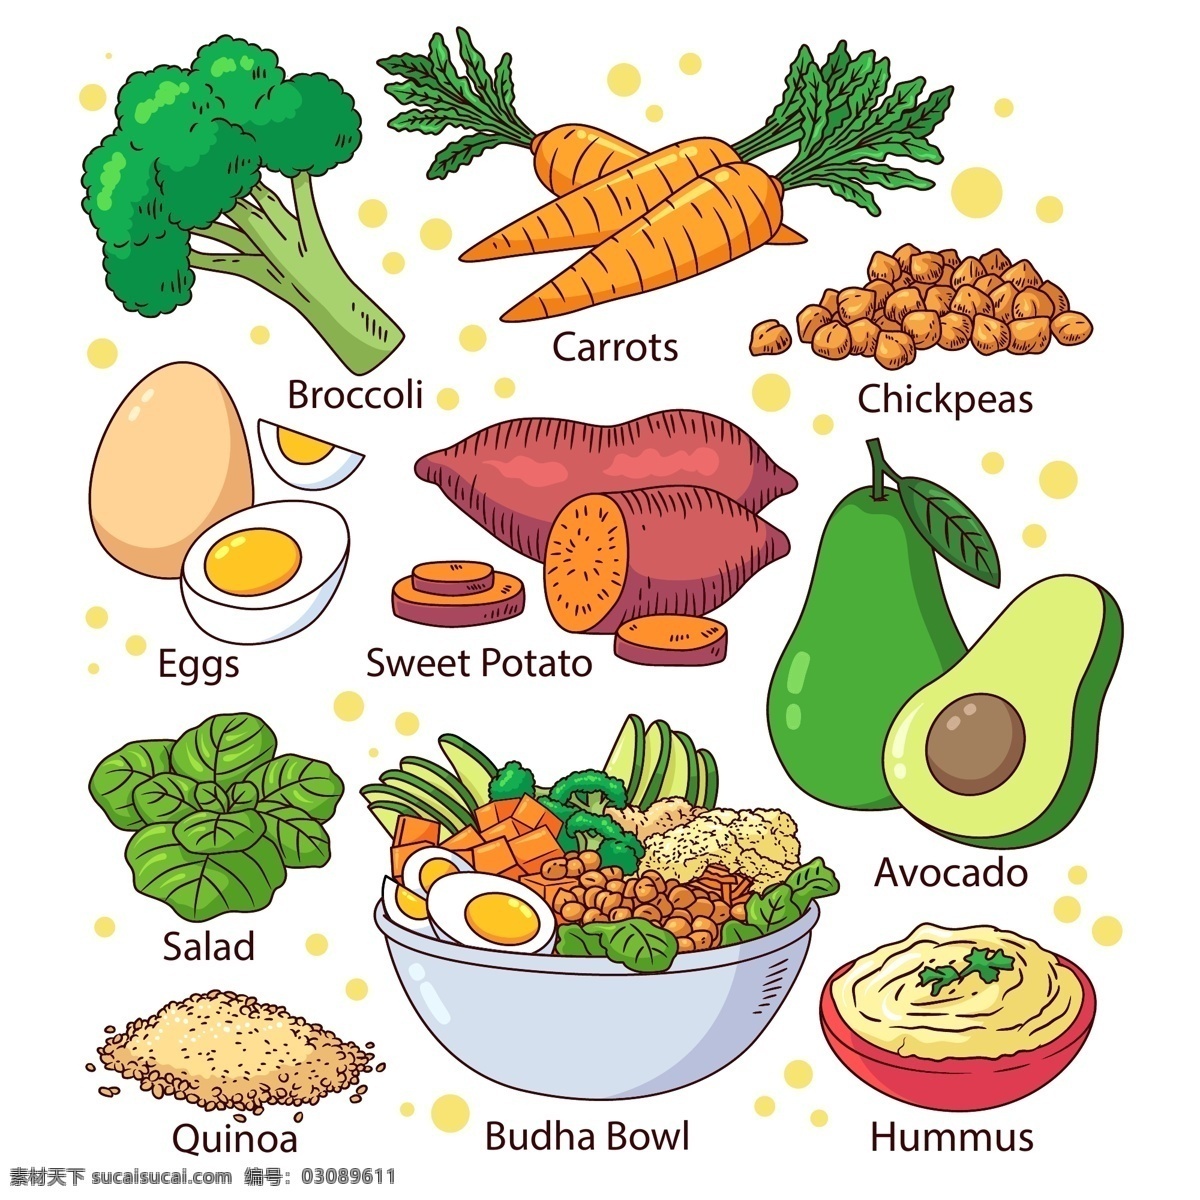 健康饮食 美食 健康食谱 美食食谱 美食海报 餐饮 蔬菜 鸡蛋 酪梨 青菜 设计素材 生活百科 餐饮美食